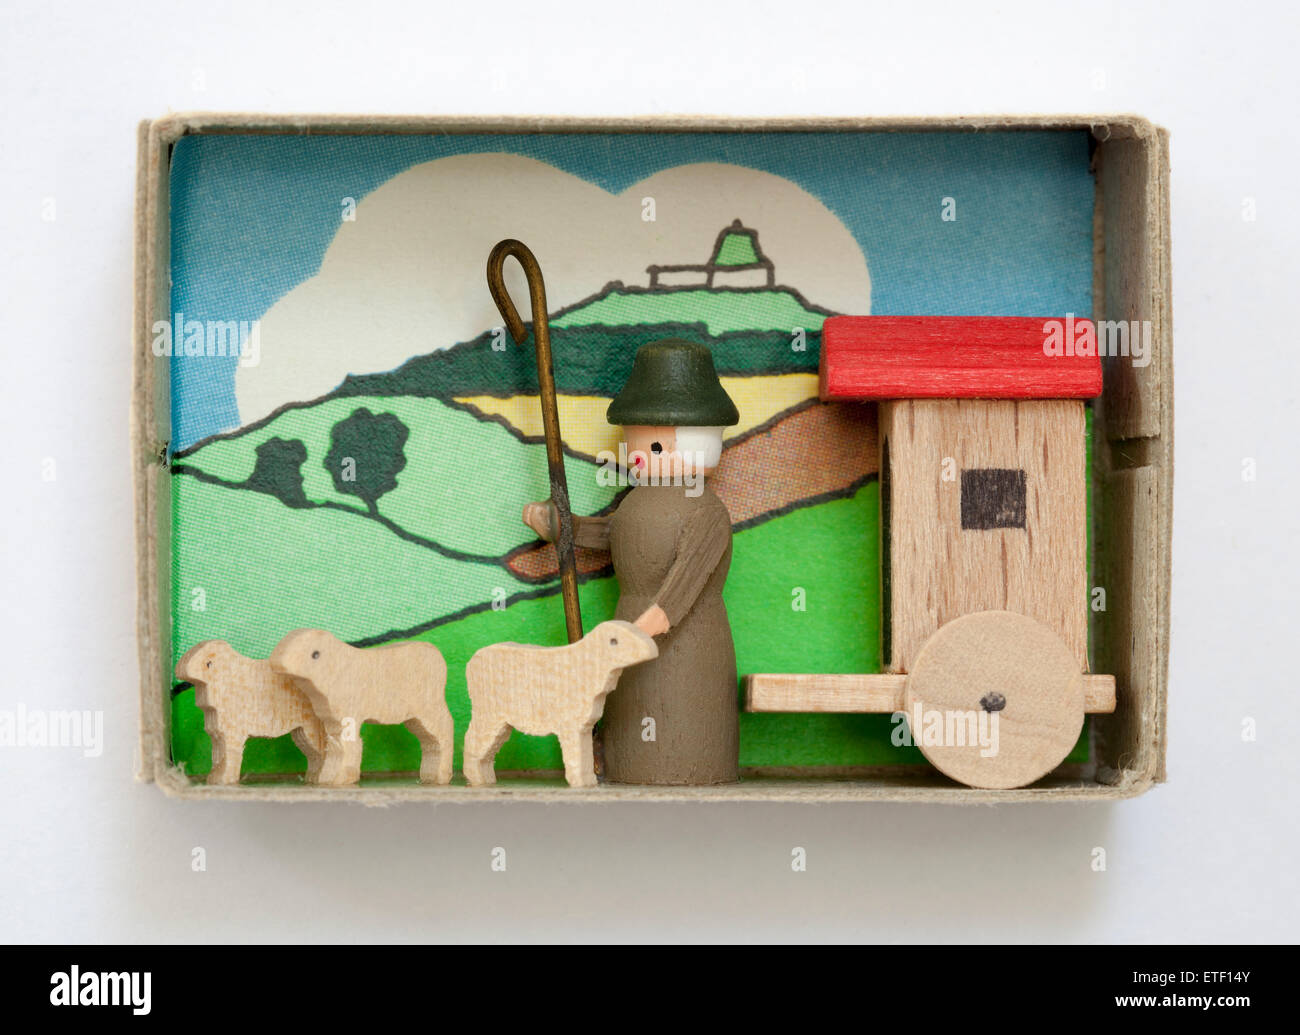 Vintage Matchbox containing hand made wood folk art toy. Erzgebirgische Volkskunst in der Zundholzschachtel Stock Photo